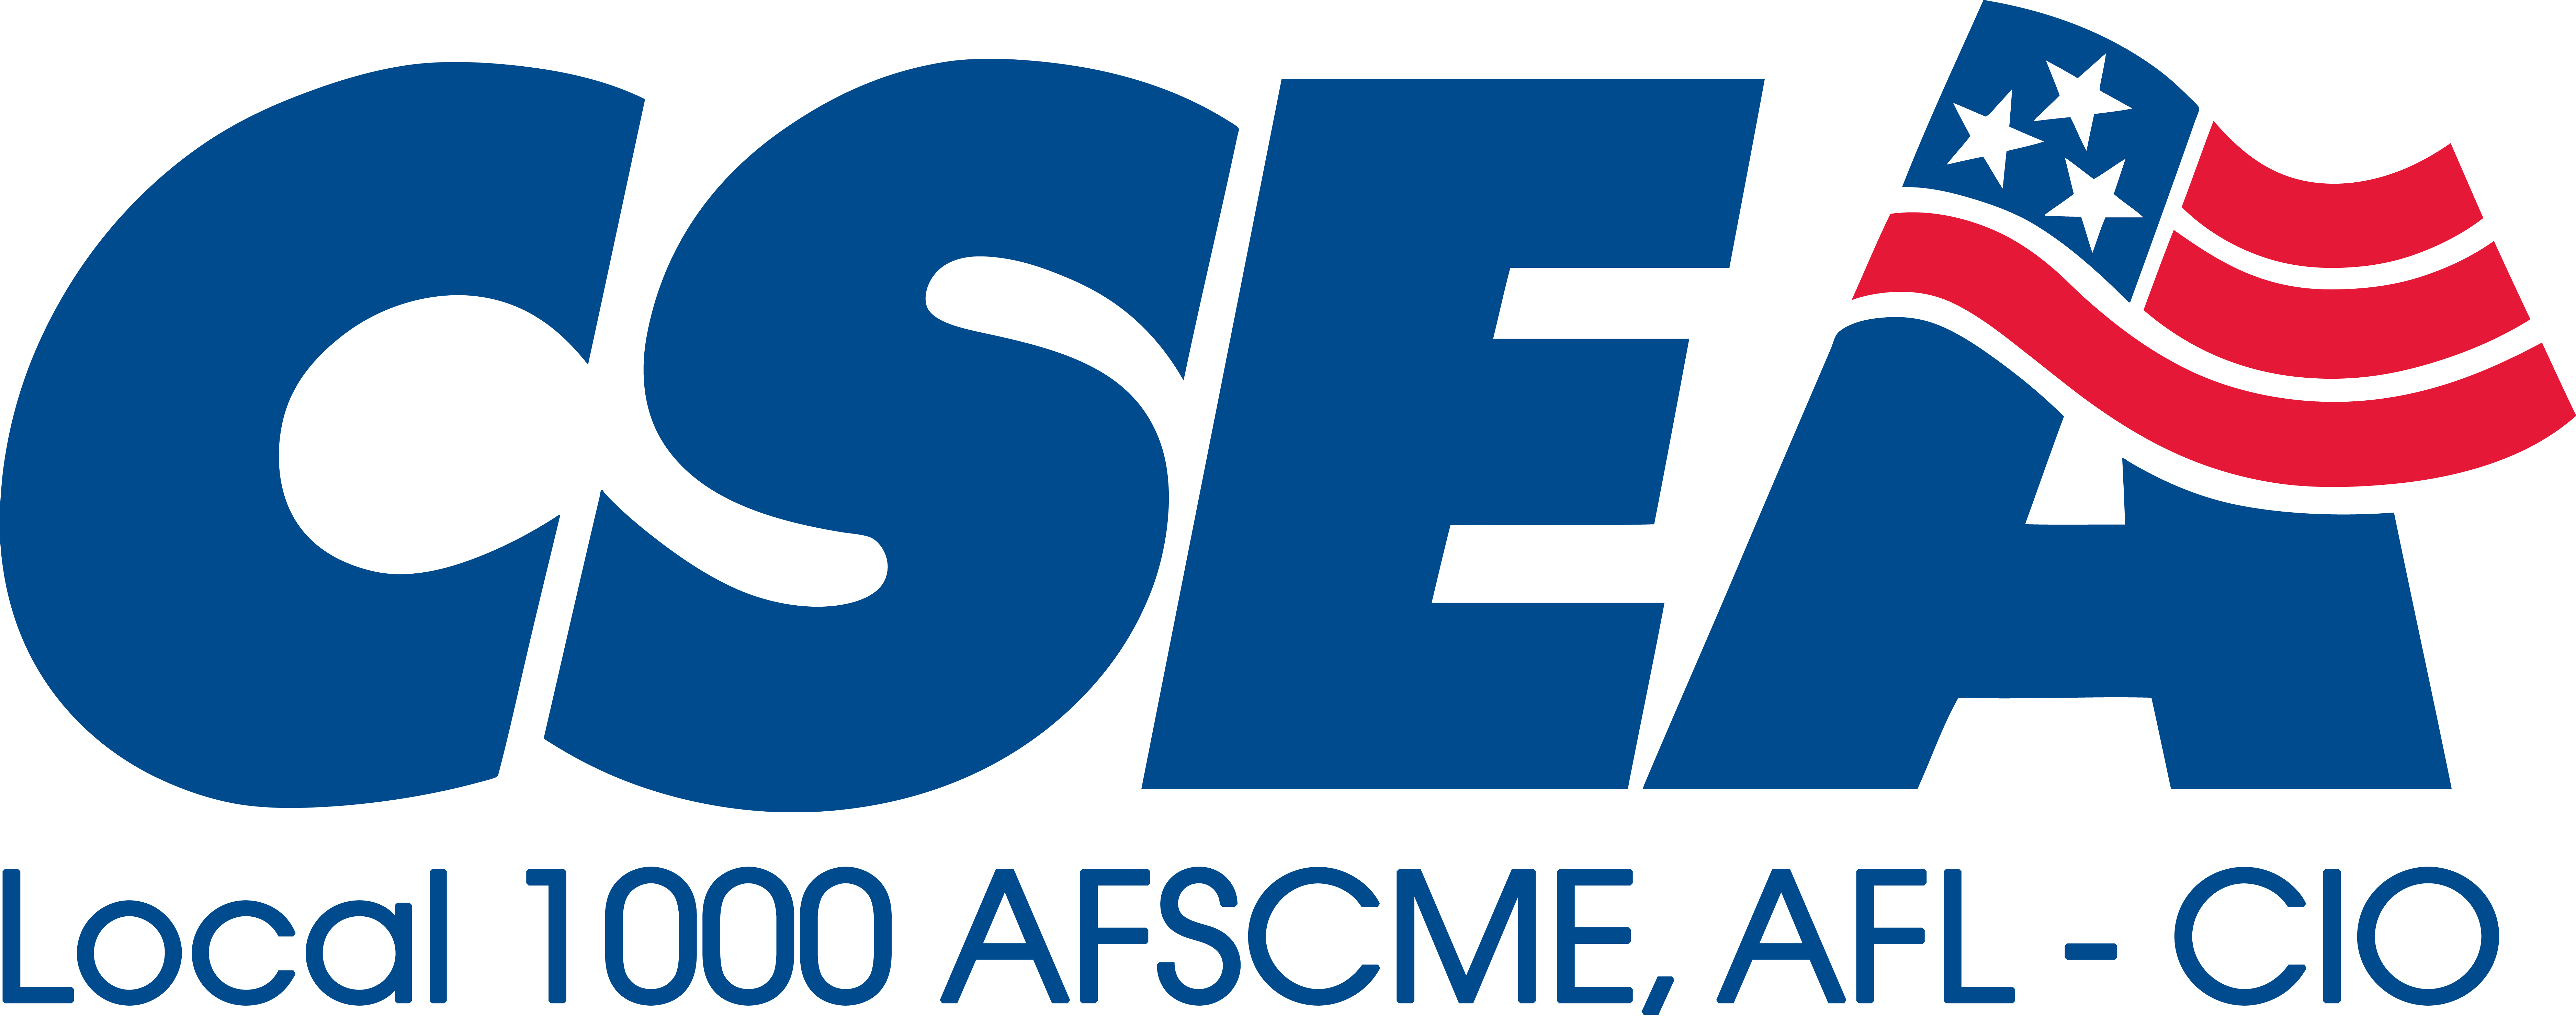 CSEA 1000 2020 Logo